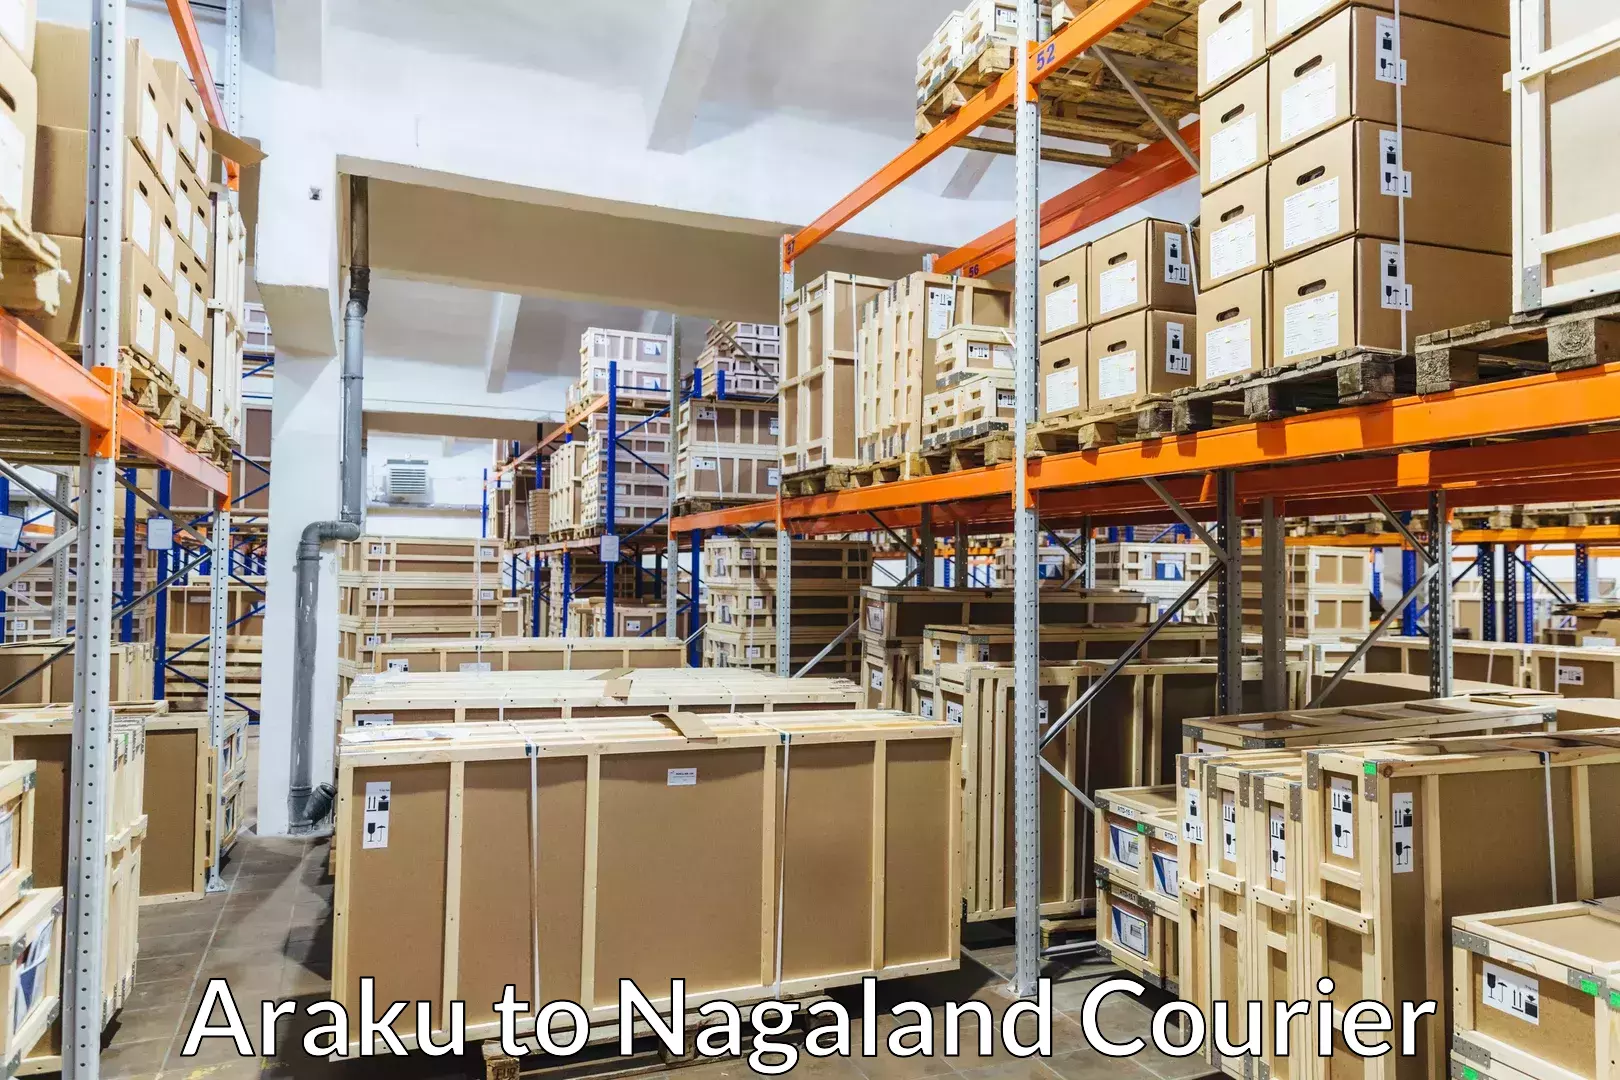 Furniture transport experts Araku to Nagaland